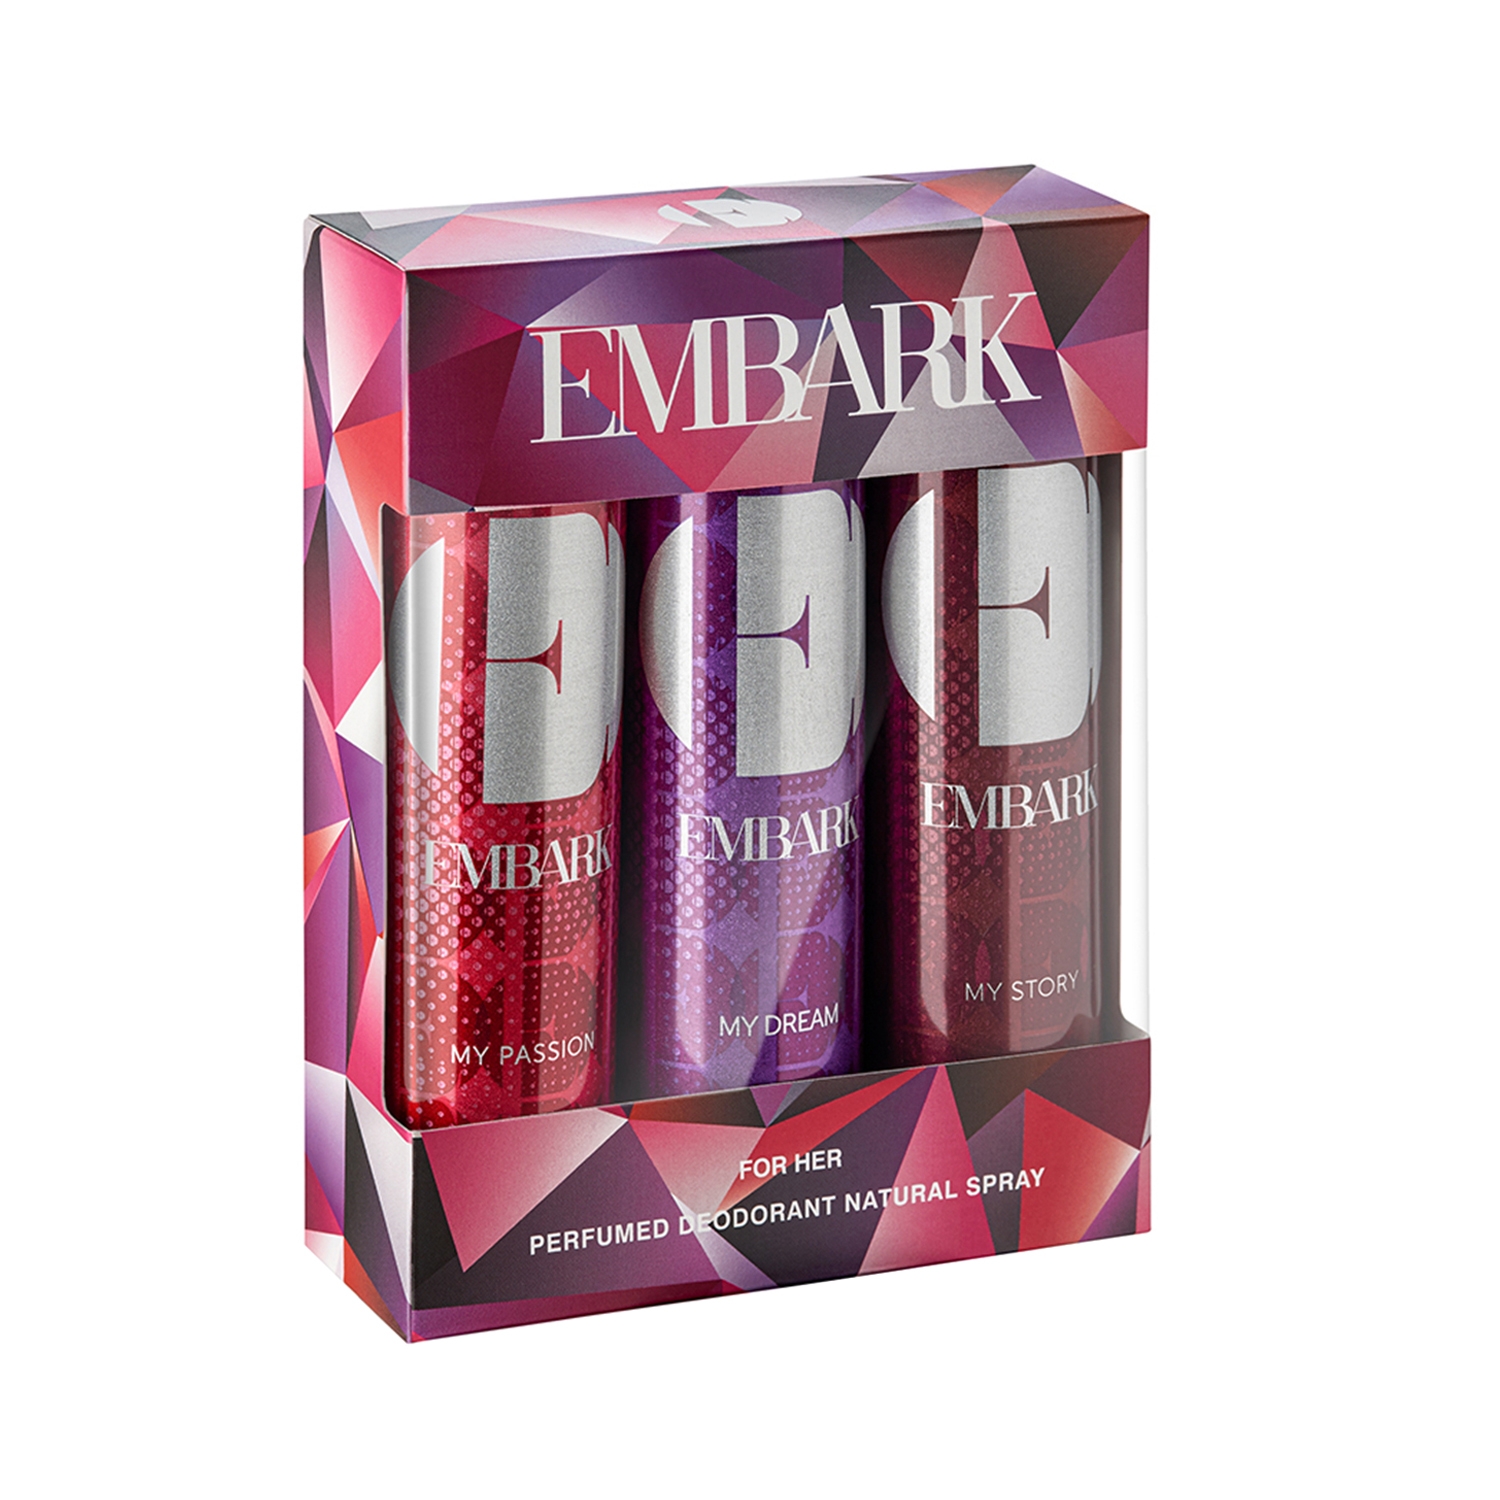 EMBARK | EMBARK Perfumed Deodorant Natural Spray For Her (3Pcs)